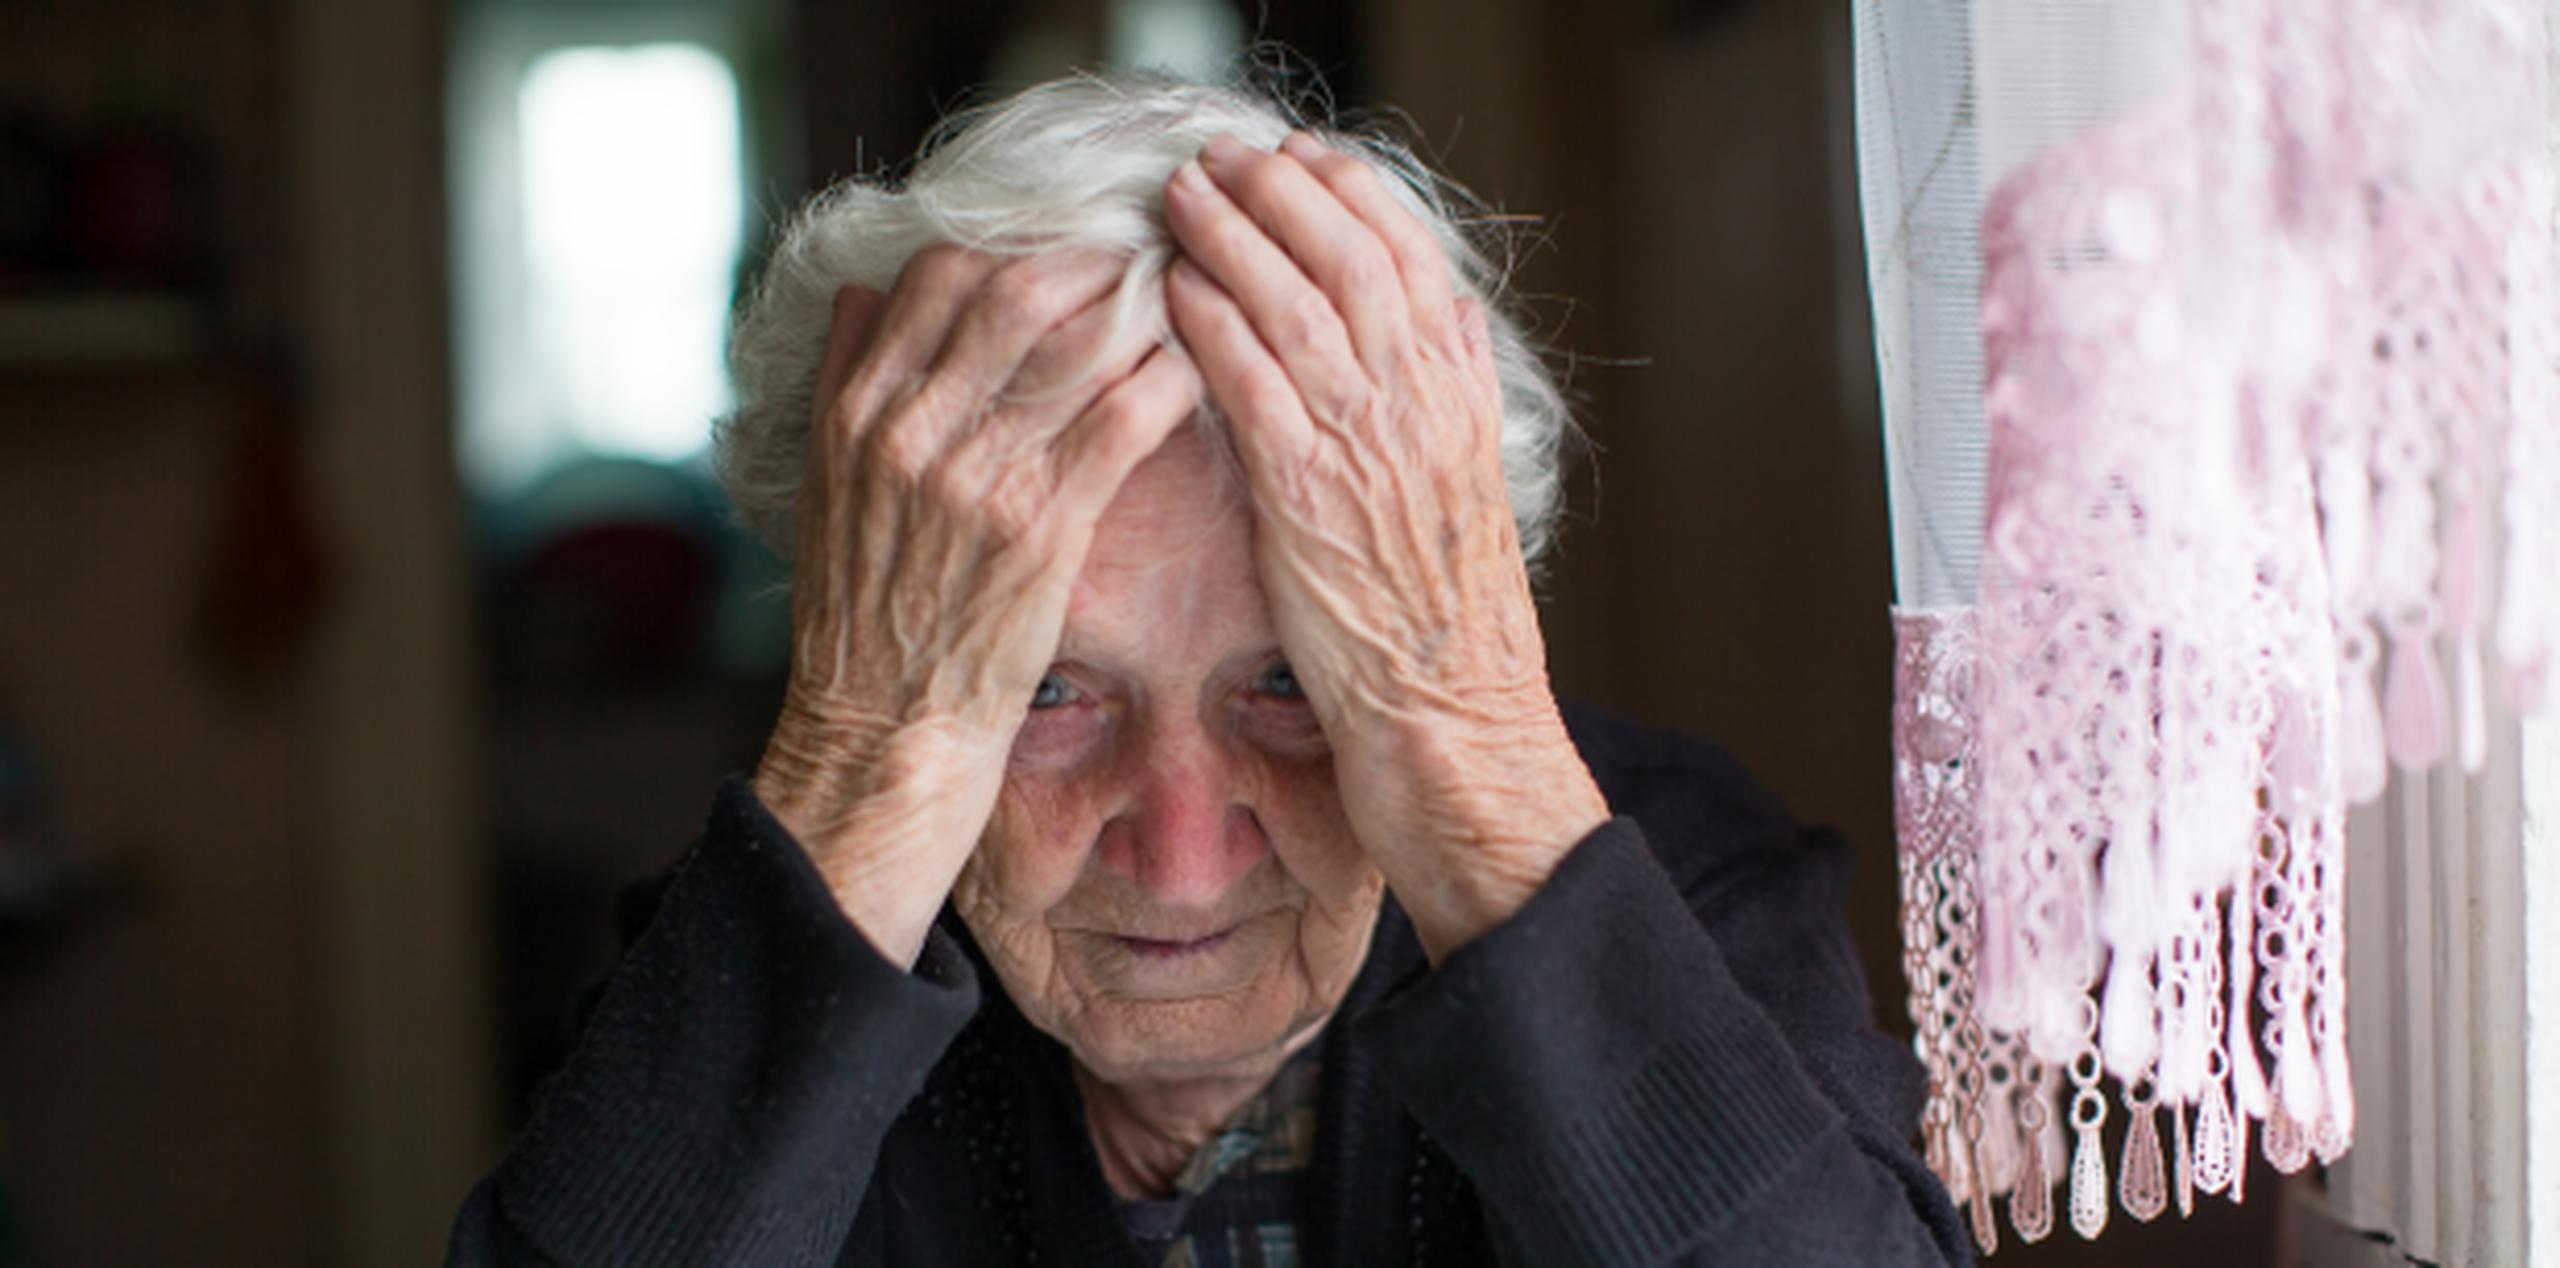 La pobreza, sufrir de enfermedades y la marginación social son varios de los factores que disparan la incidencia de suicidios en nuestros adultos mayores. (Shutterstock)